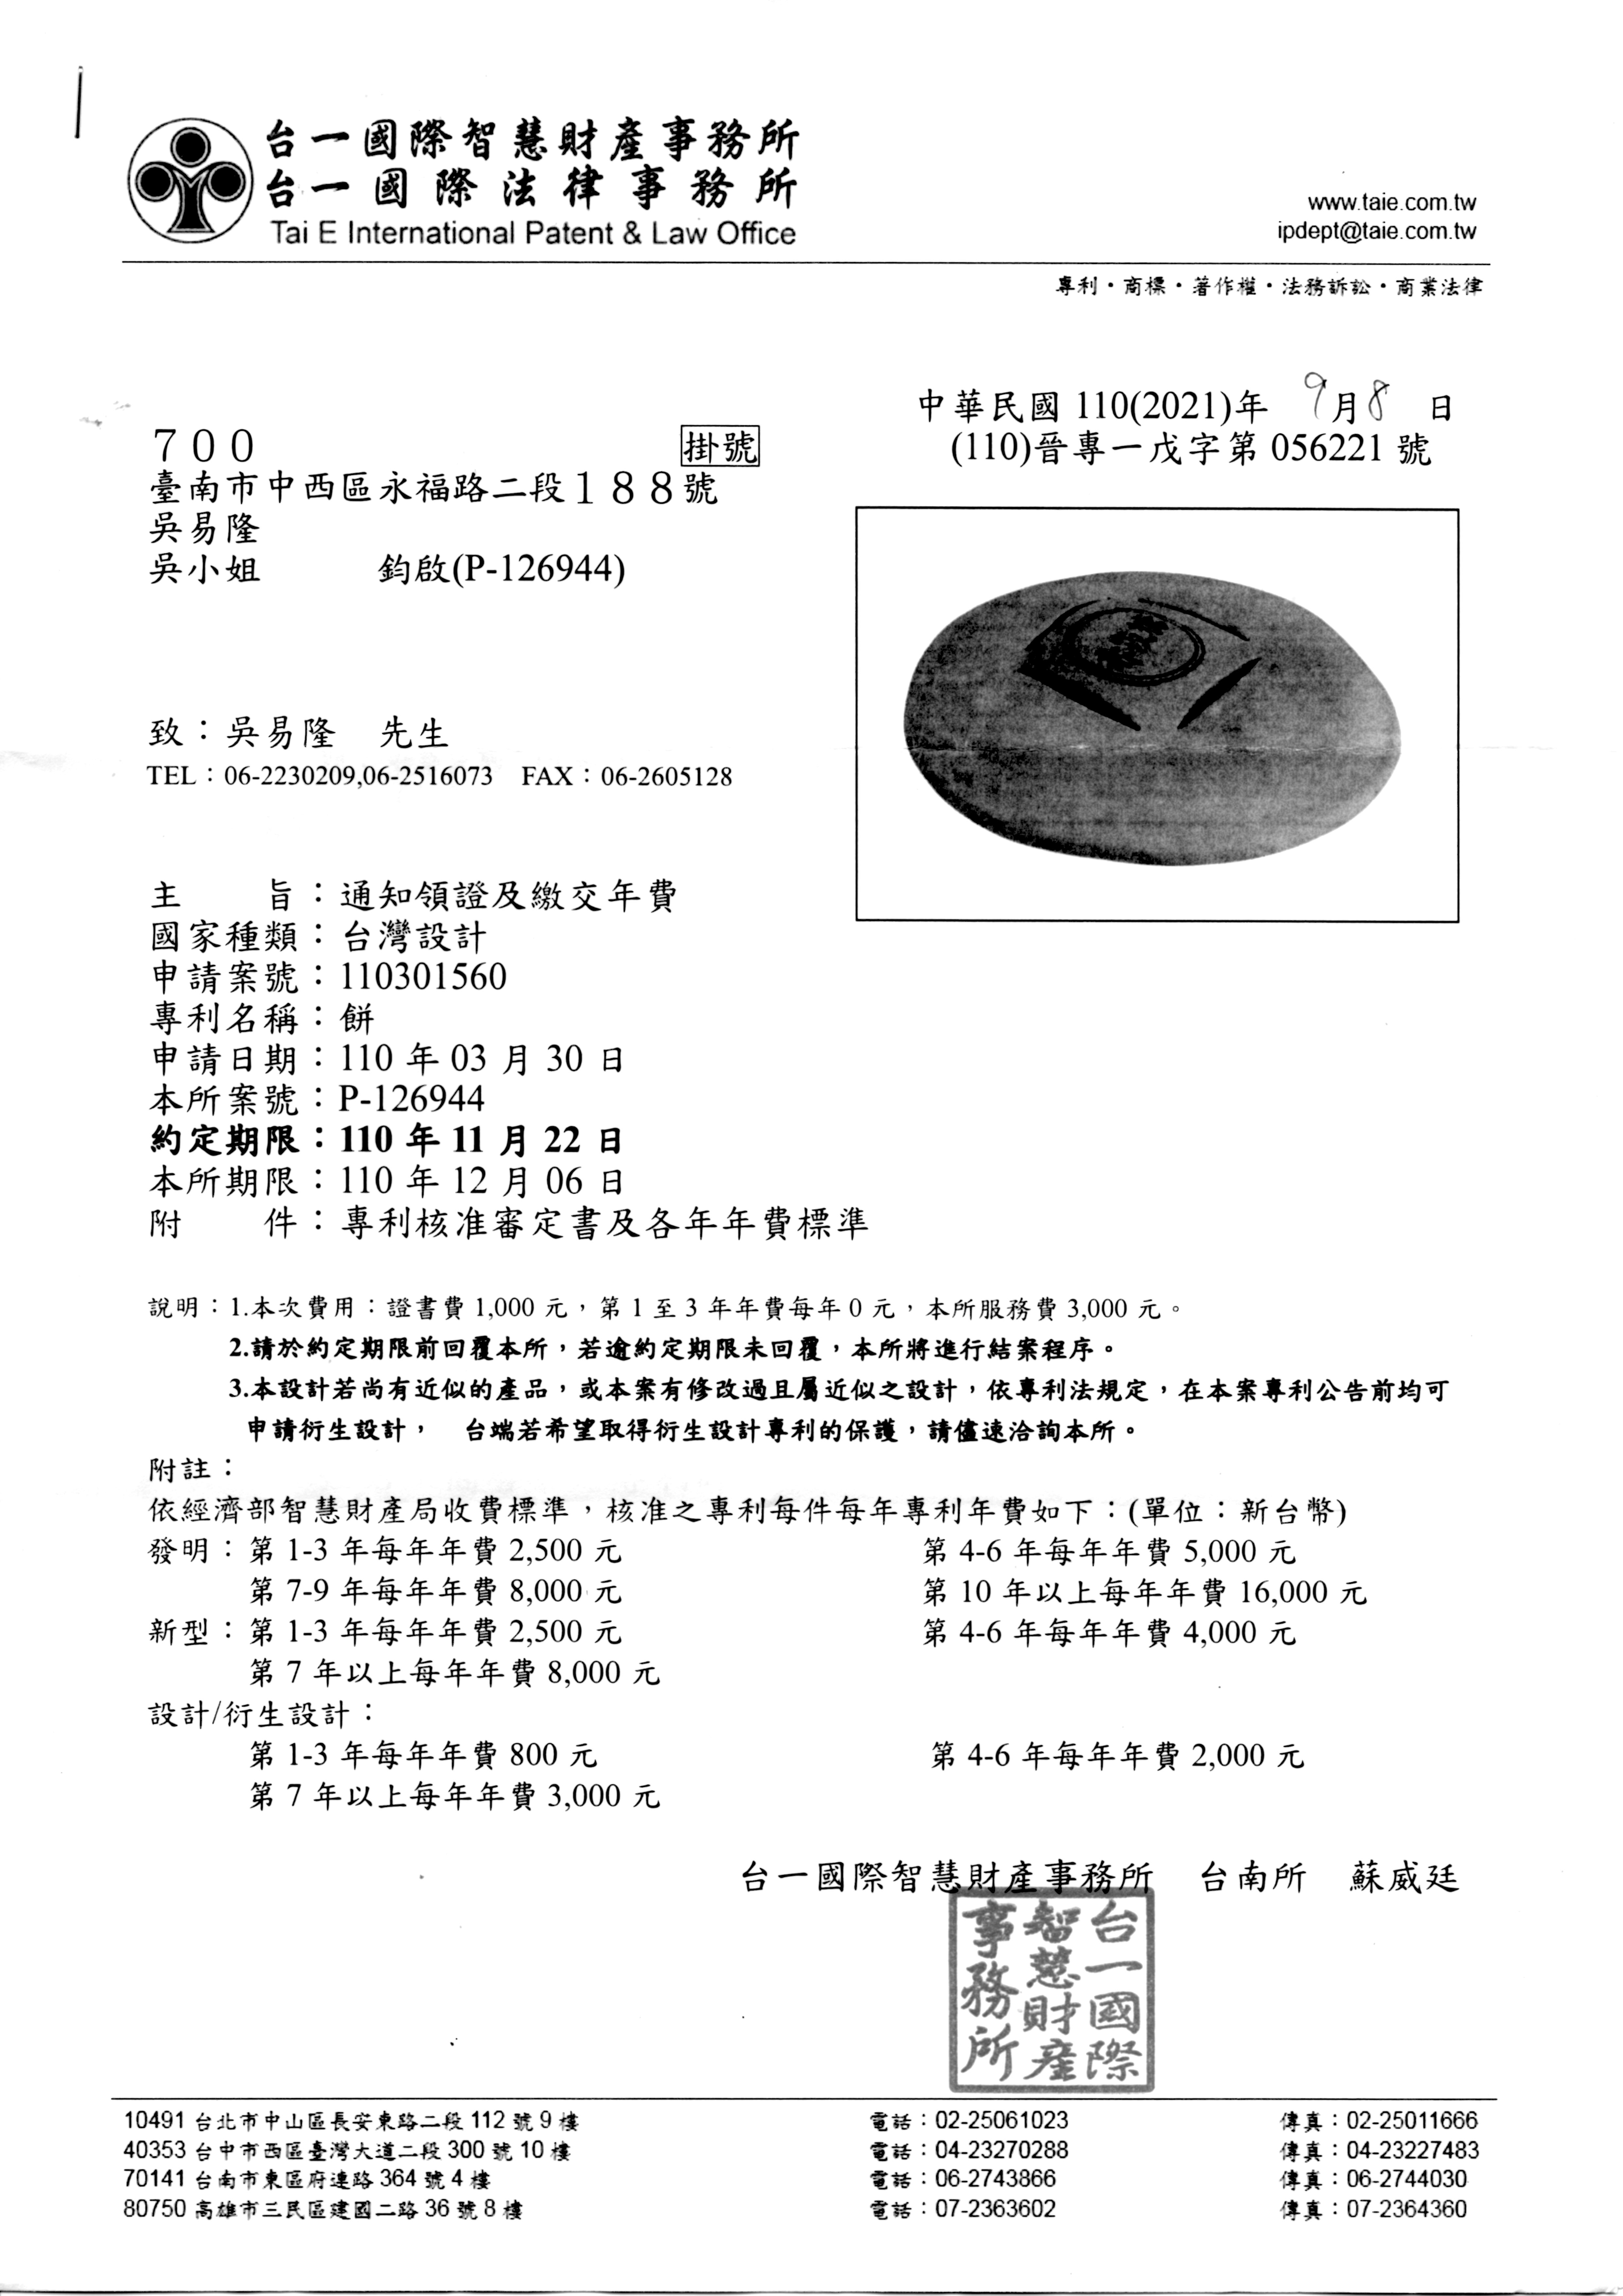 20211122赤崁糖-古錢餅-發明專利1.jpg